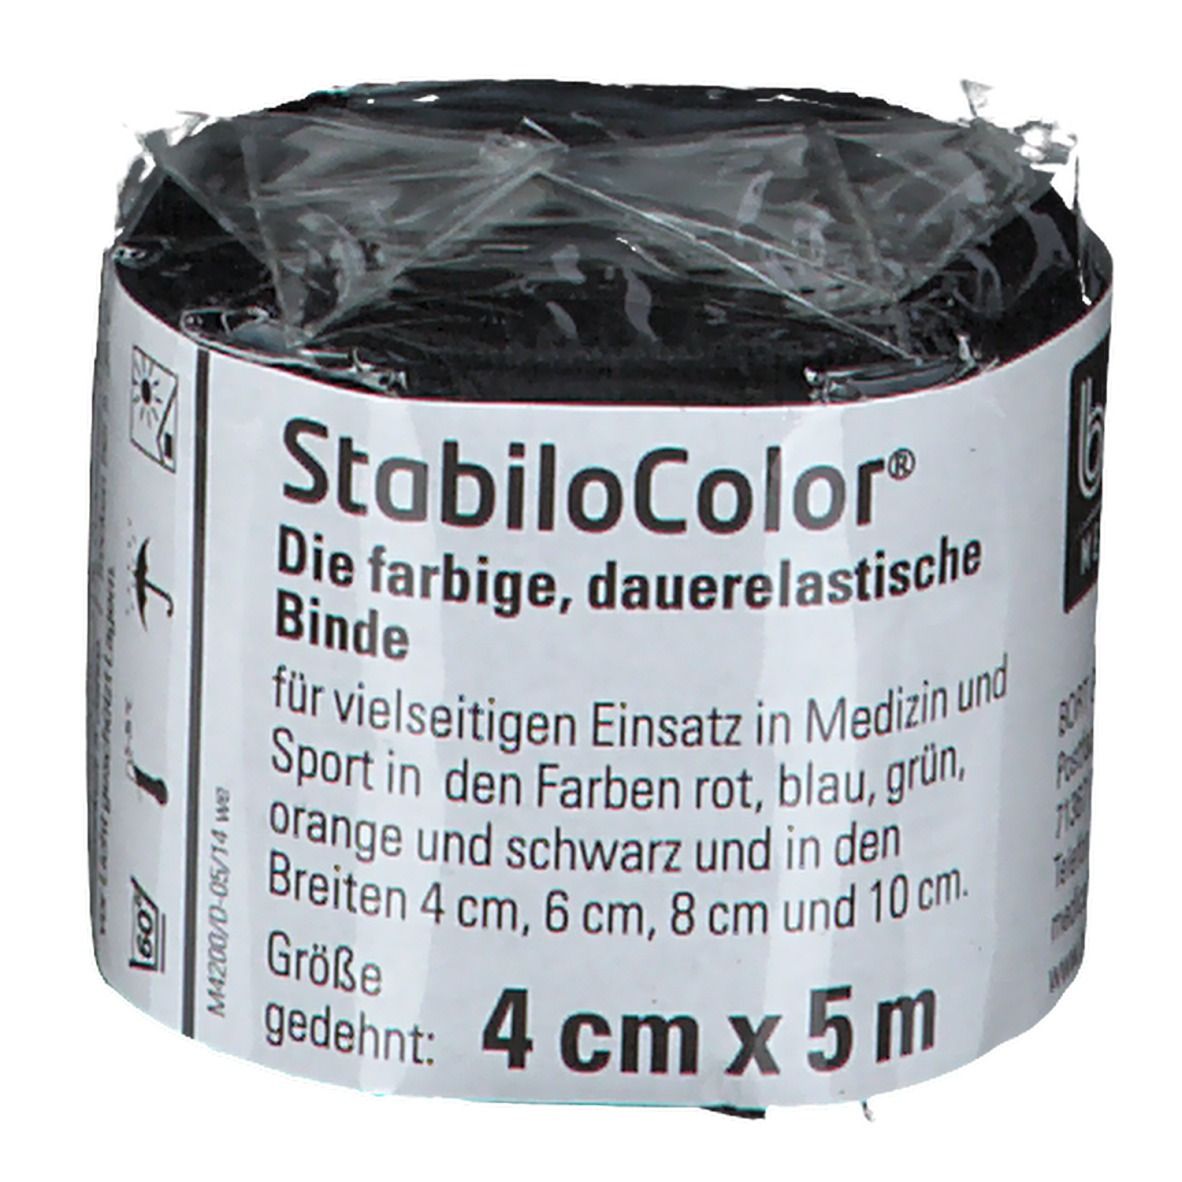 BORT StabiloColor® Binde 4 cm schwarz